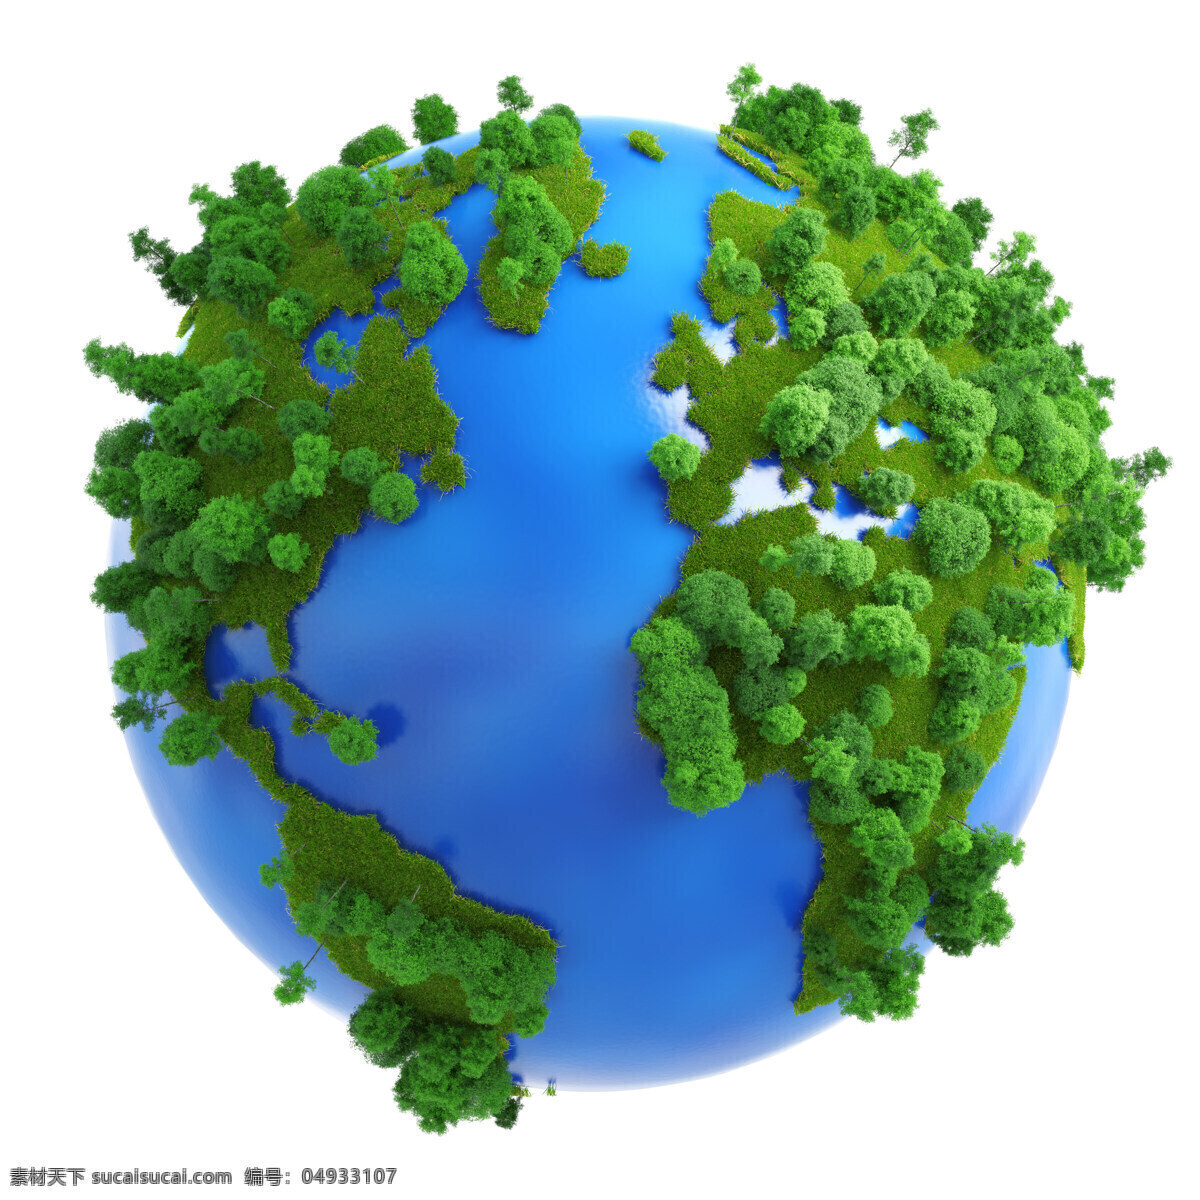 环保宣传 地球 模型 环境保护 树木 抽象 创意 球体 3d模型 地球模型 球形 高清图片 地球图片 环境家居